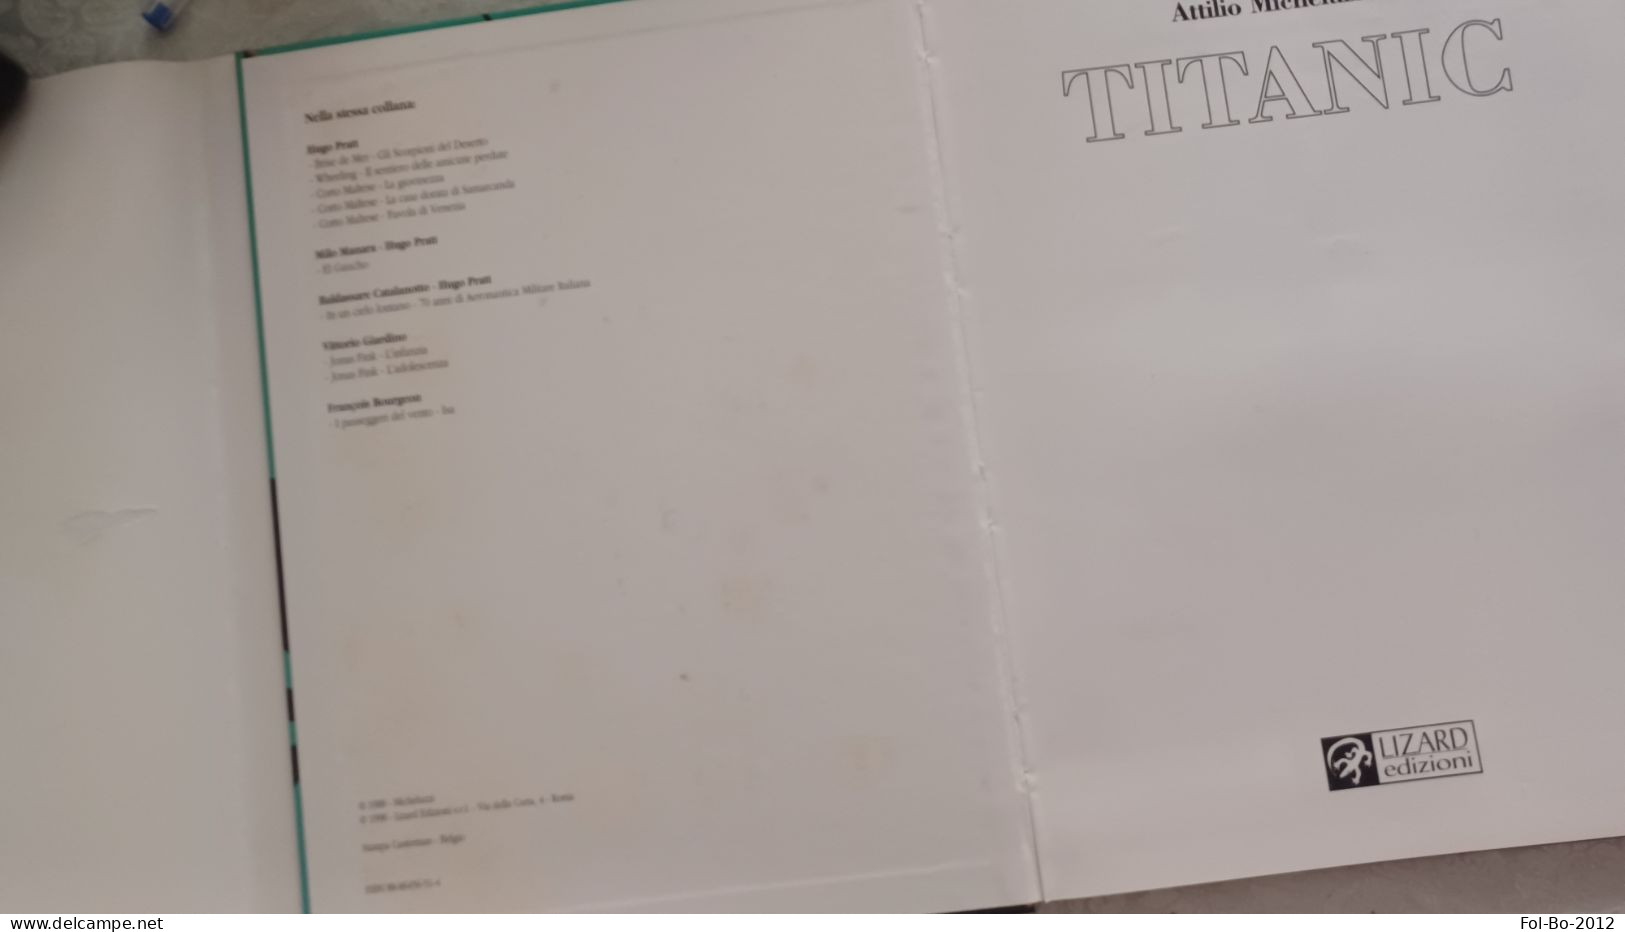 Attilio Micheluzzi TITANIC Lizard Edizioni 1998 - Premières éditions